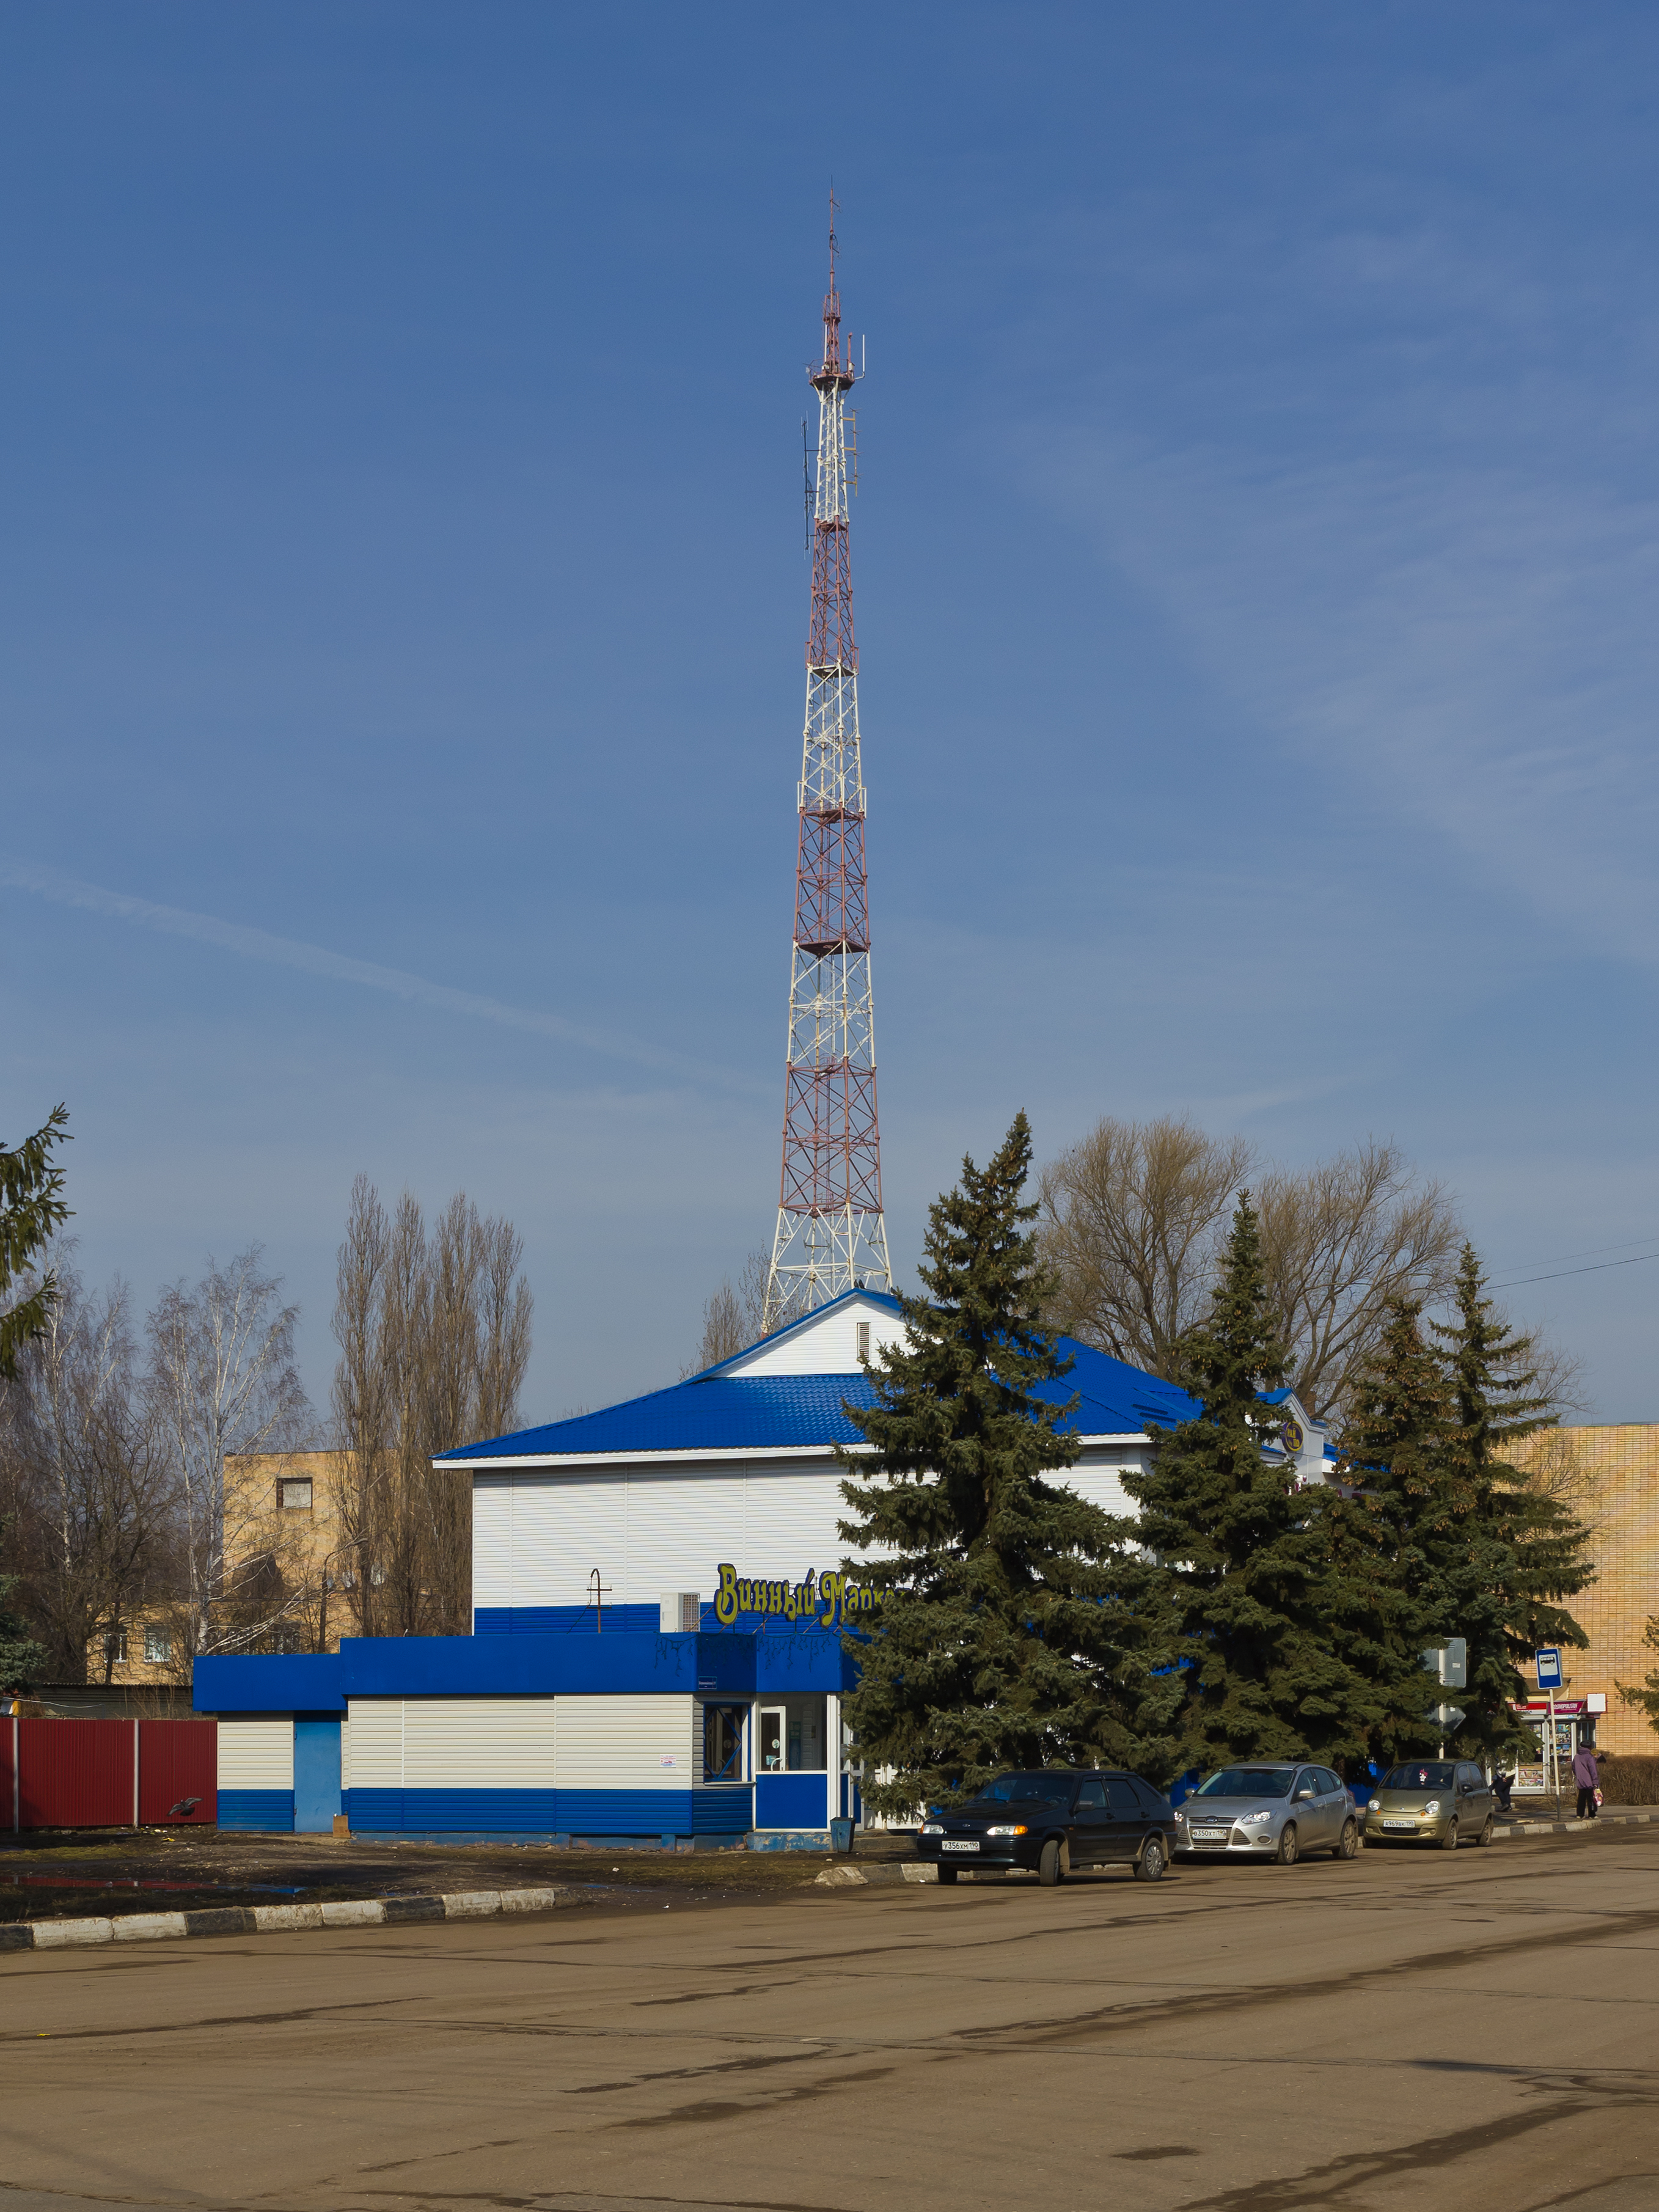 Serebryanye Prudy (MosOblast) 03-2014 img02-antenna mast